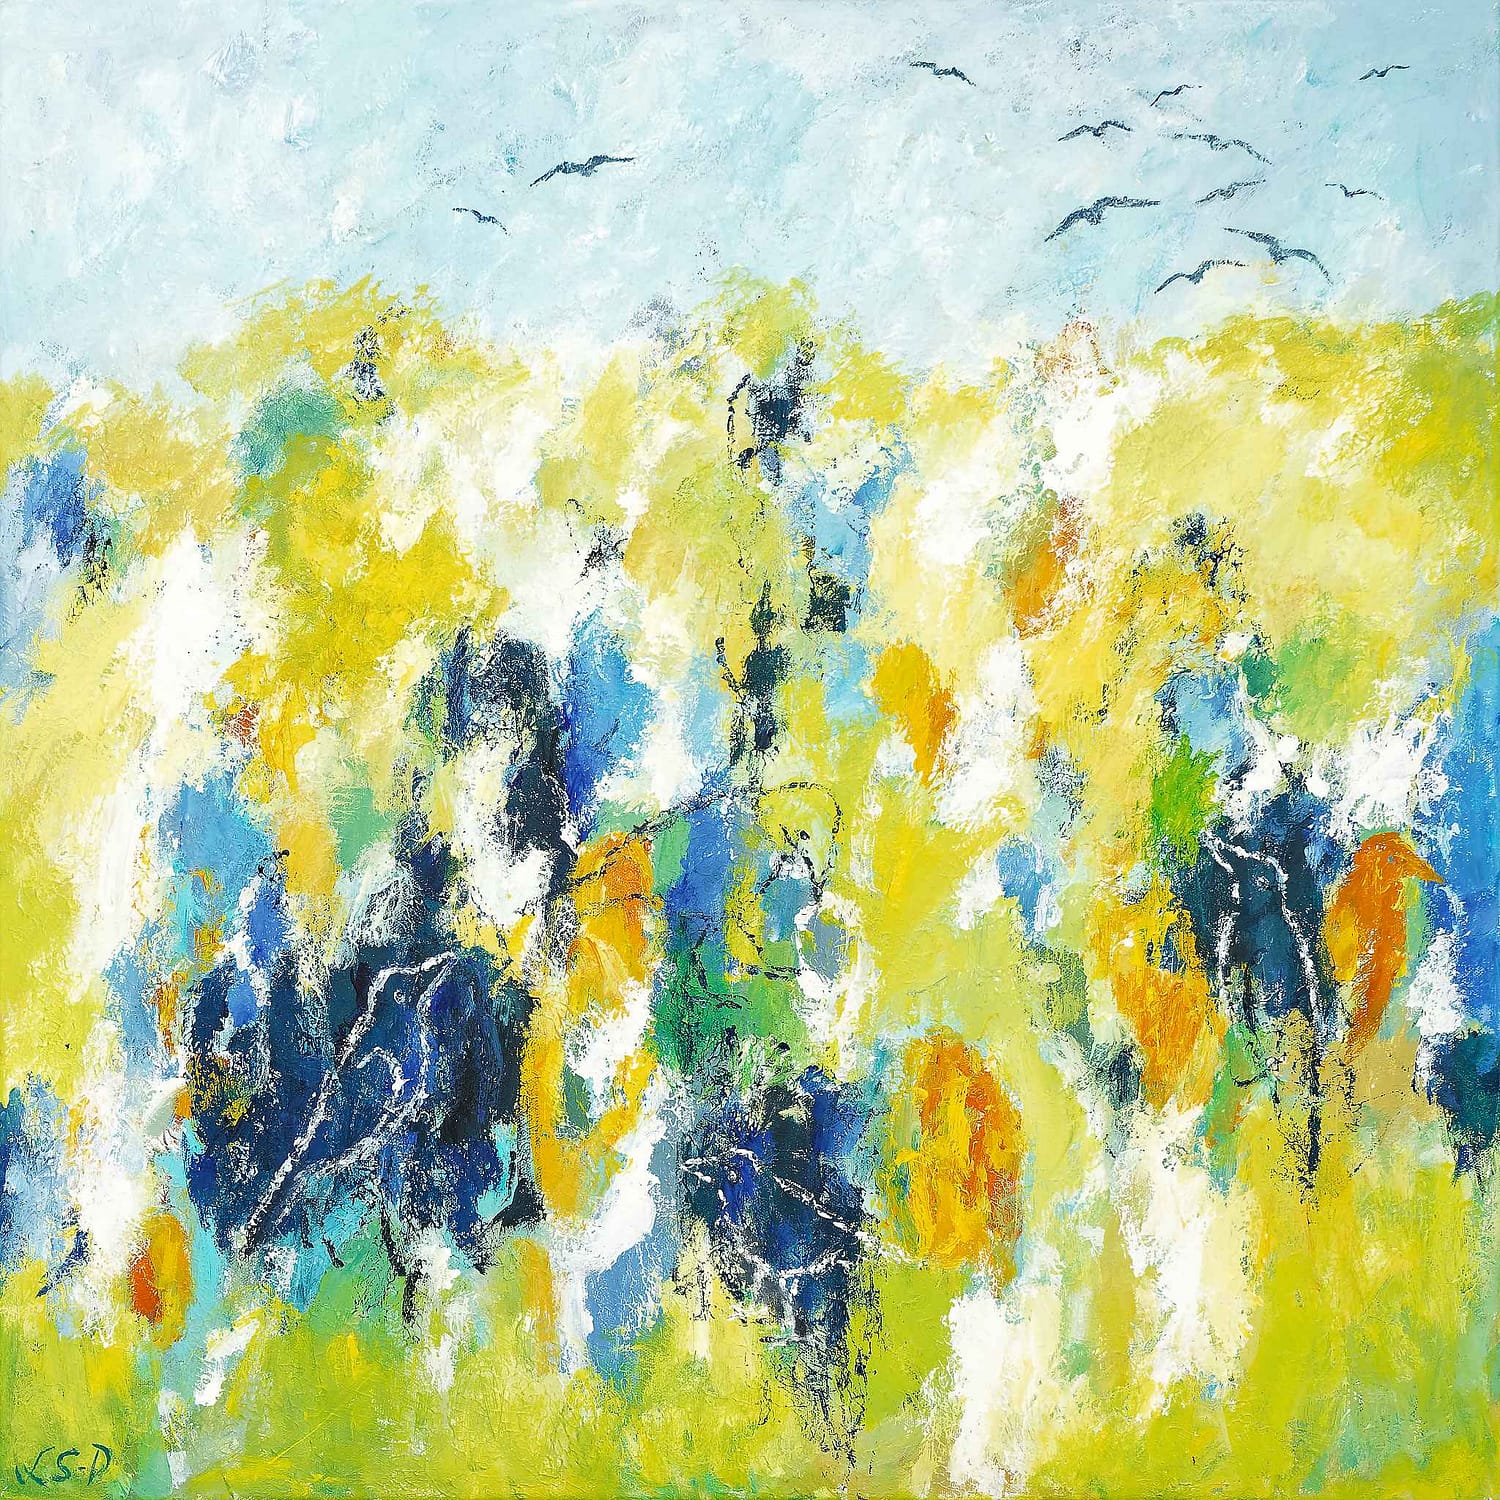 Lene Schmidt-Petersen: "Fugle i forårslandskab" (80x80 cm)